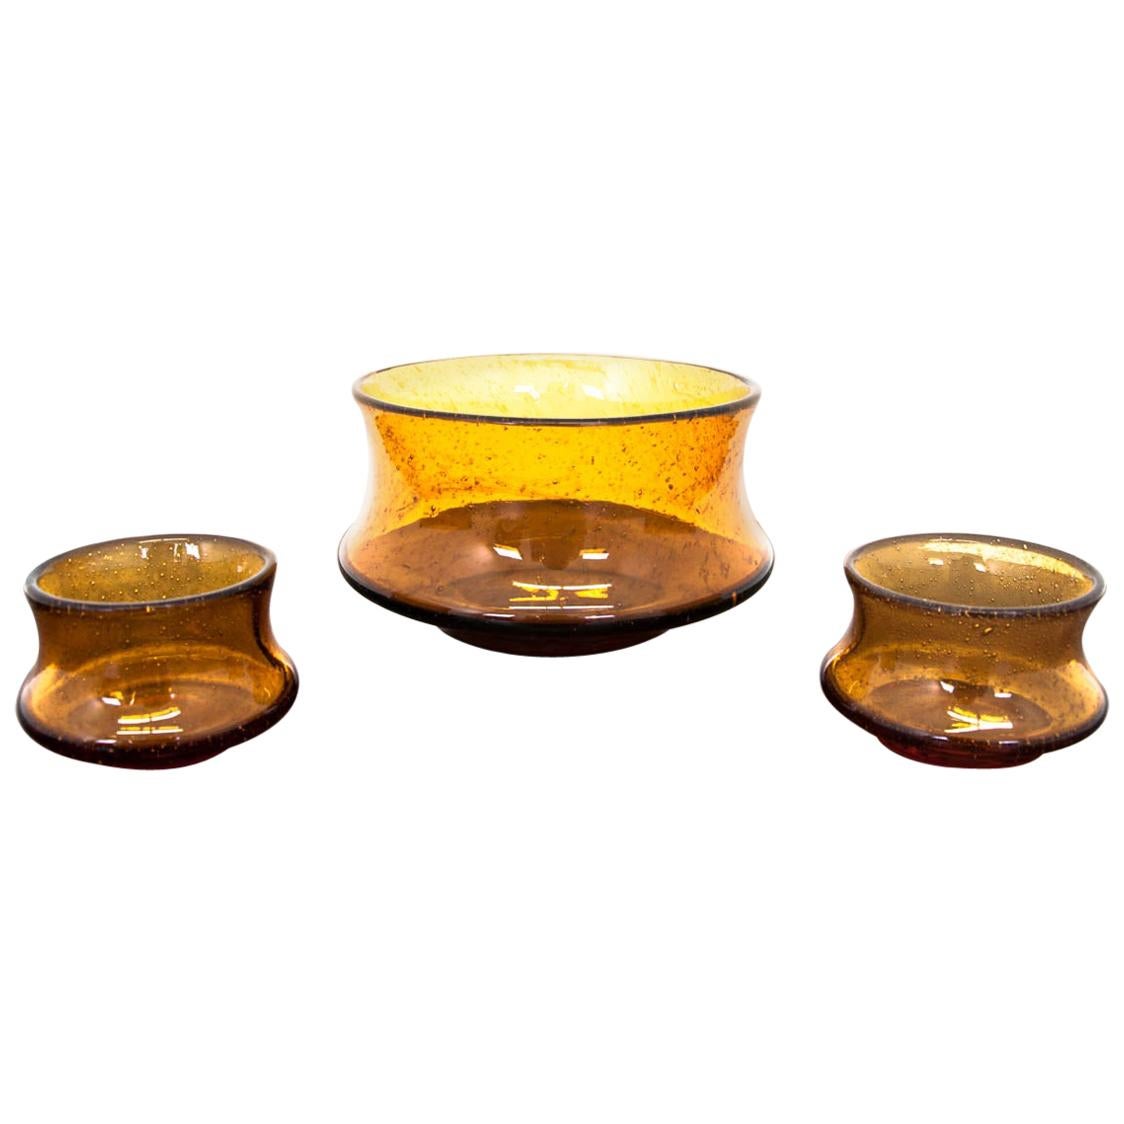 Trois bols en verre de couleur ambre